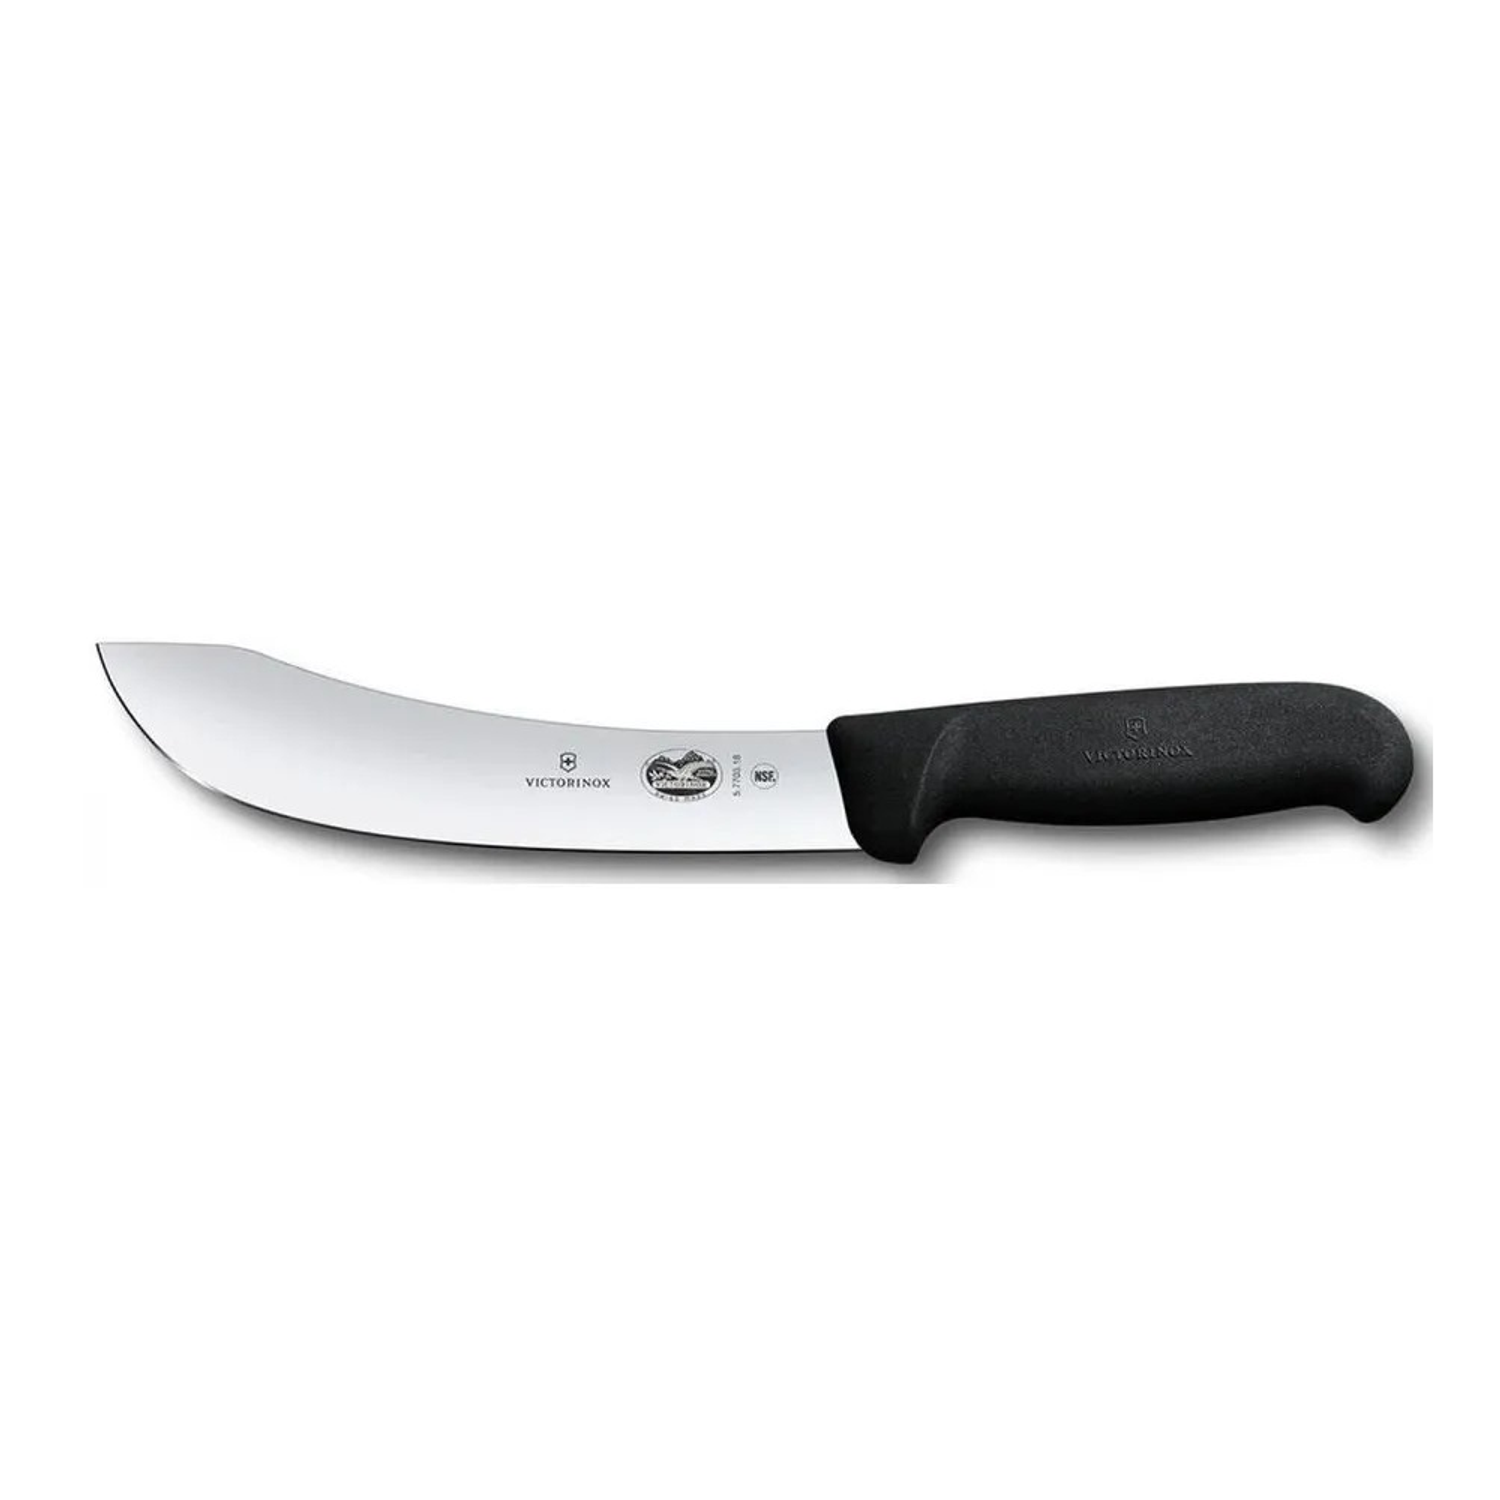 Нож кухонный Victorinox Skinning 5.7703.18 стальной разделочный лезвие 180 мм прямая заточка черный - фото 1